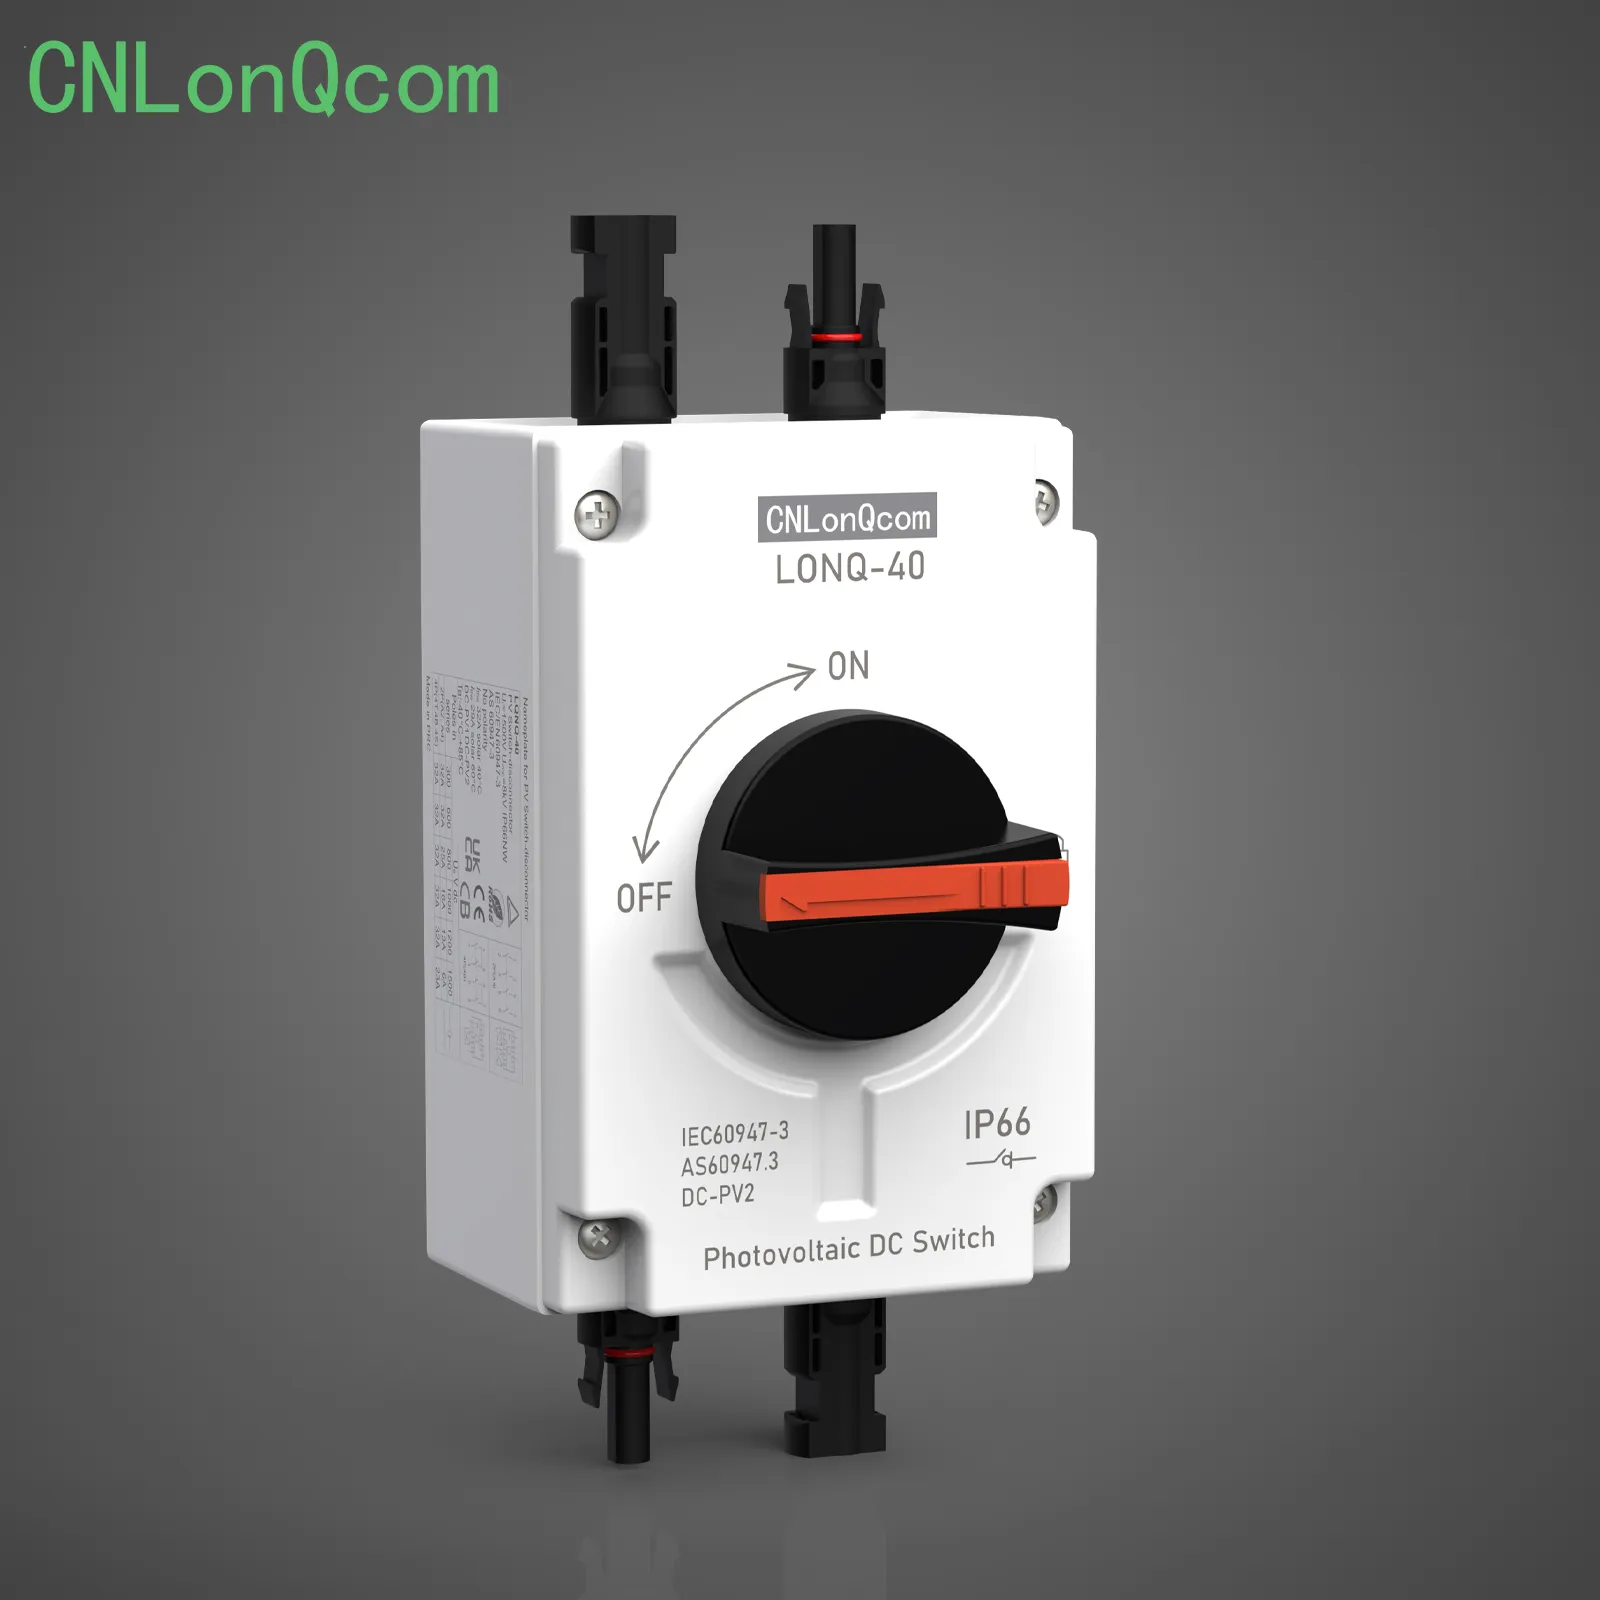 CNLonQcom Nuduhake Ngalih Isolator ing Video Anyar